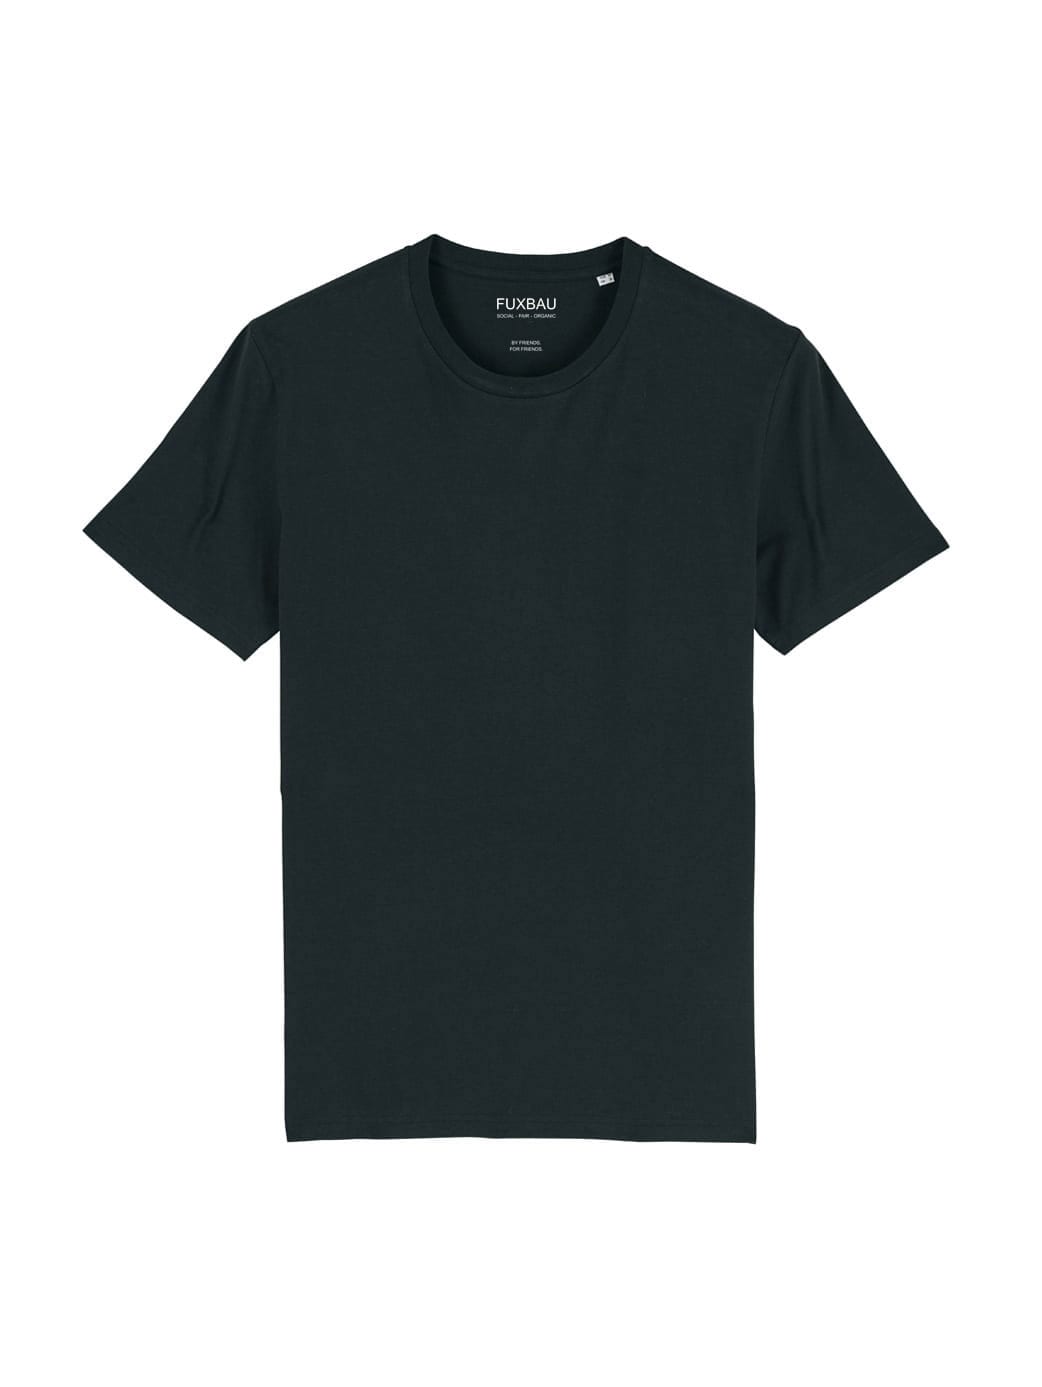 Produktbild eines nachhaltigen Fair Fashion Basic T-Shirt in schwarz aus 100% GOTS zertifizierter Bio-Baumwolle von FUXBAU.